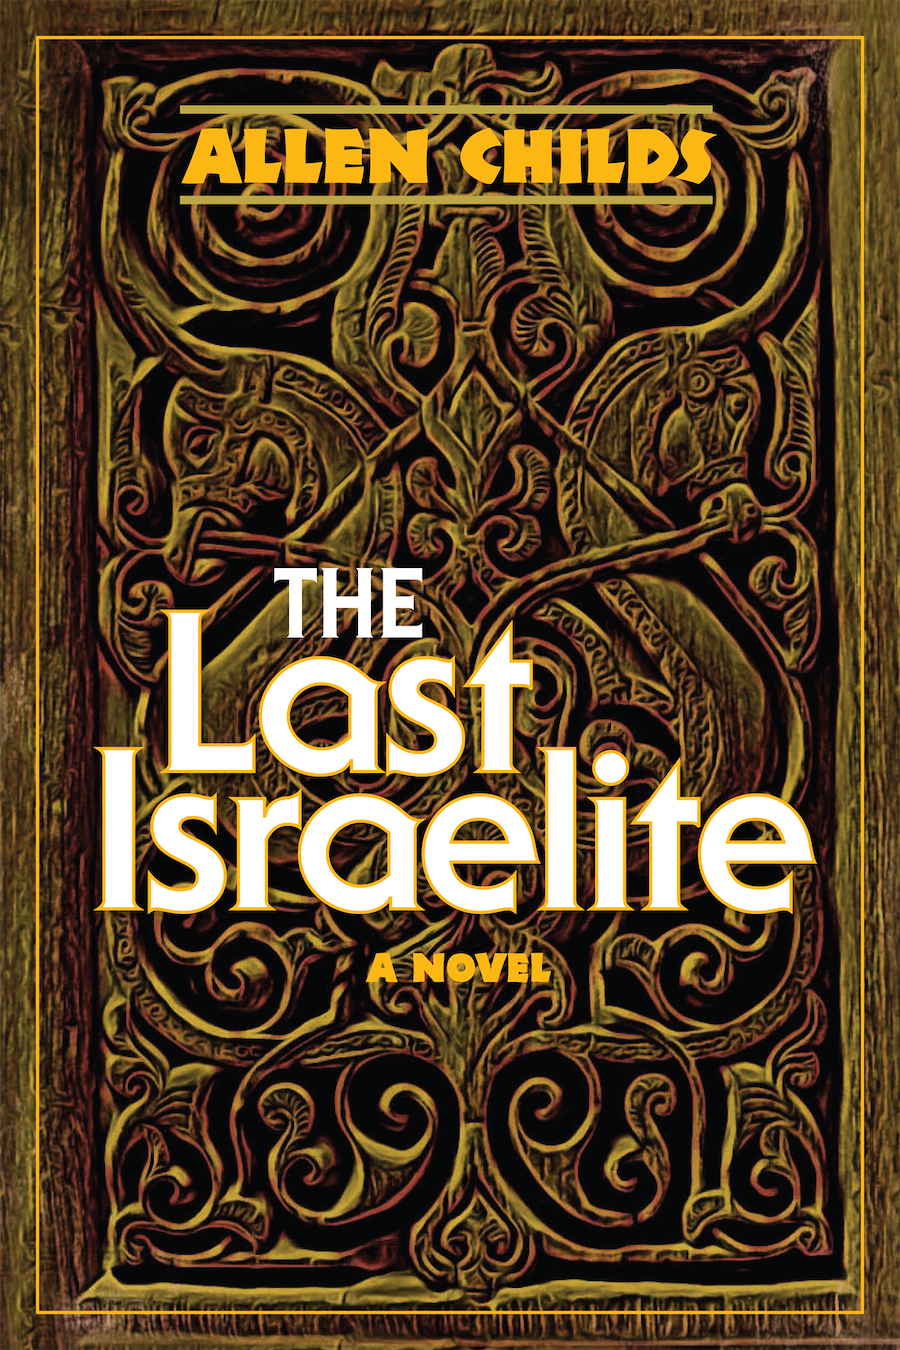 The Last Israelite